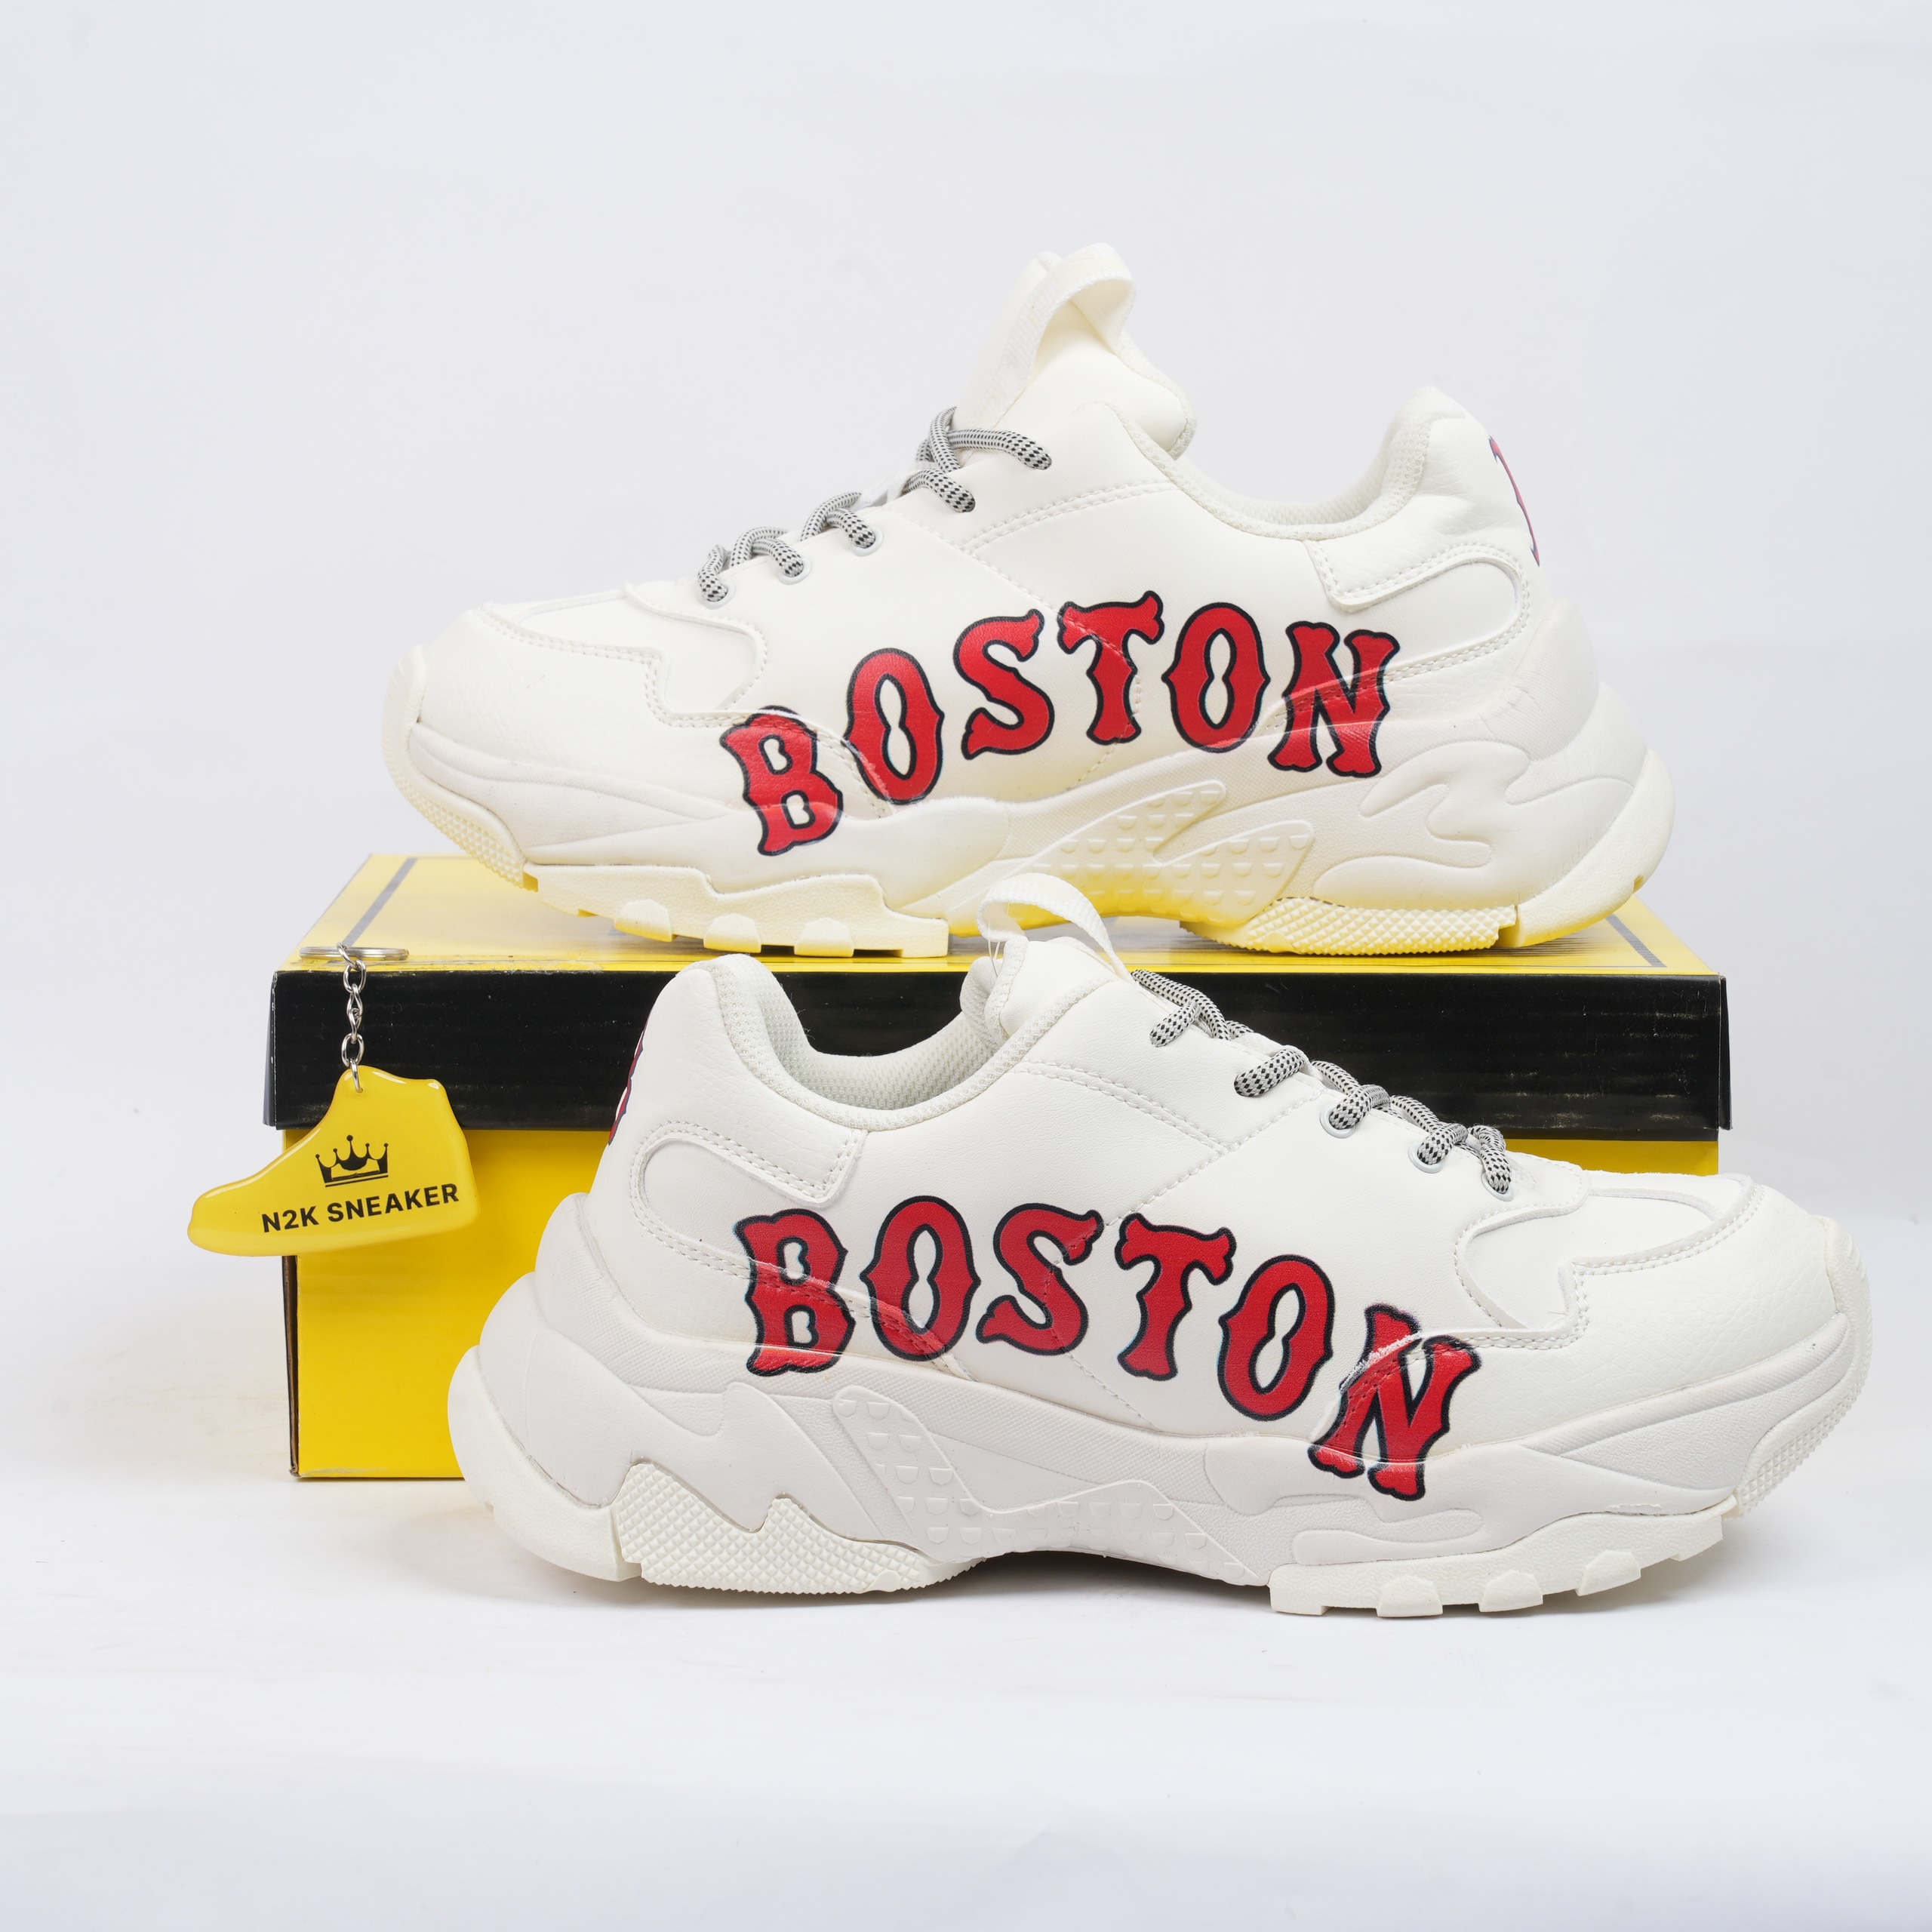 Giày MLB Boston Red Sox Đỏ Rep 11 giá rẻ nhất tại Hà Nội tp Hcm